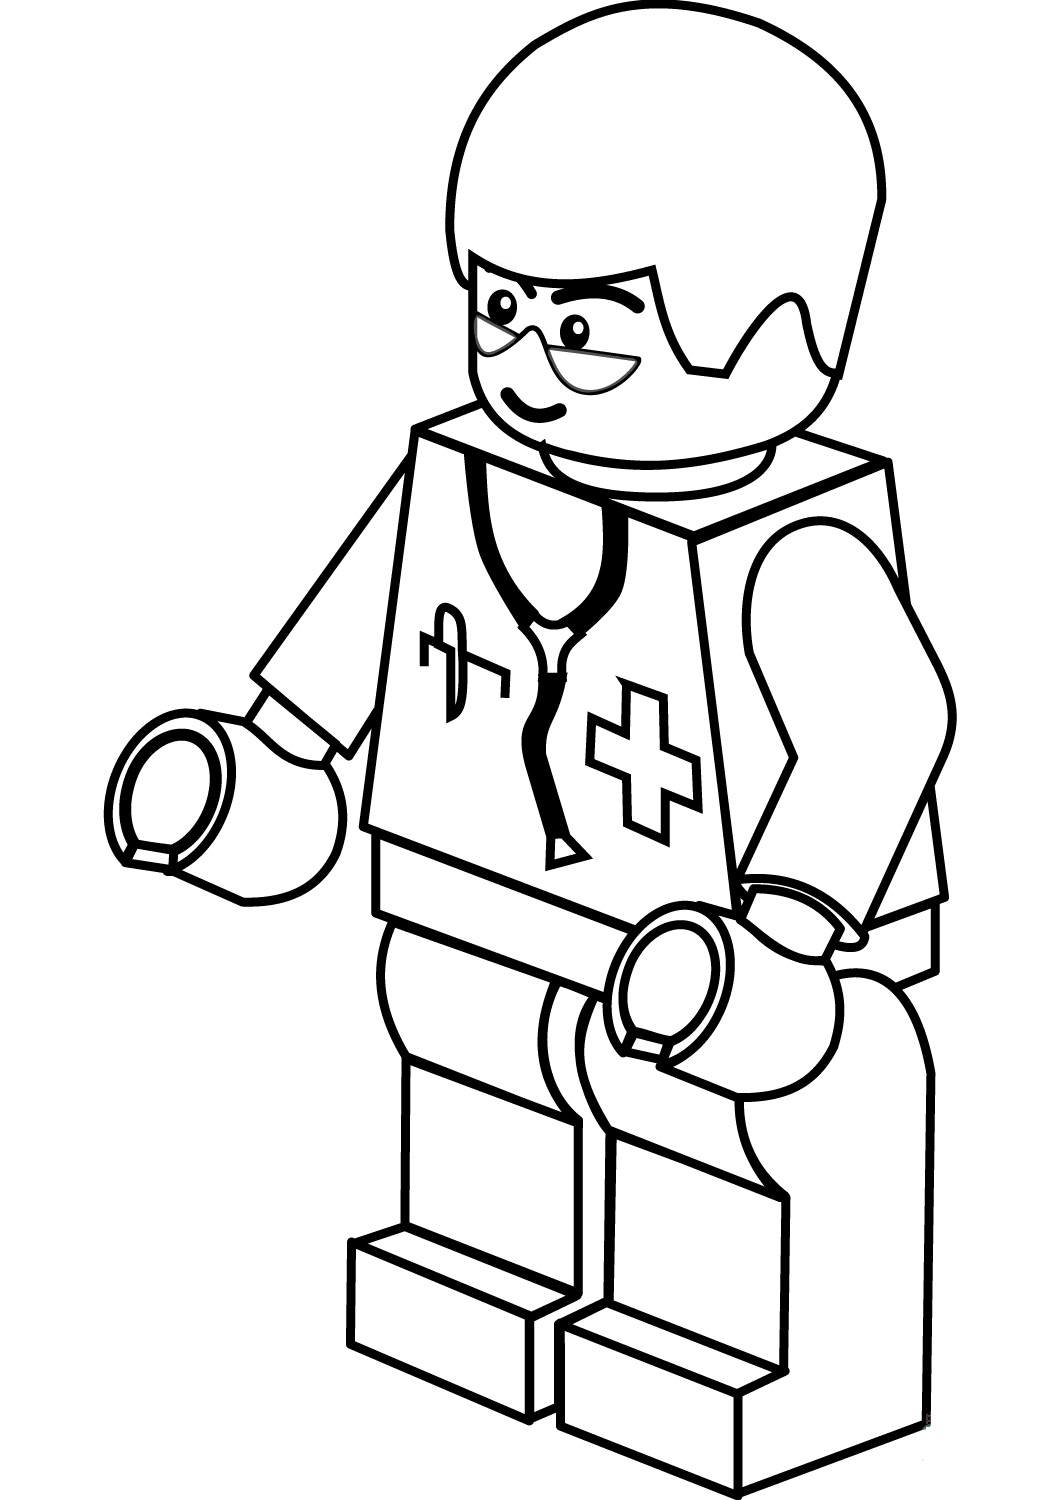 Pagina da colorare del dottore della città di Lego